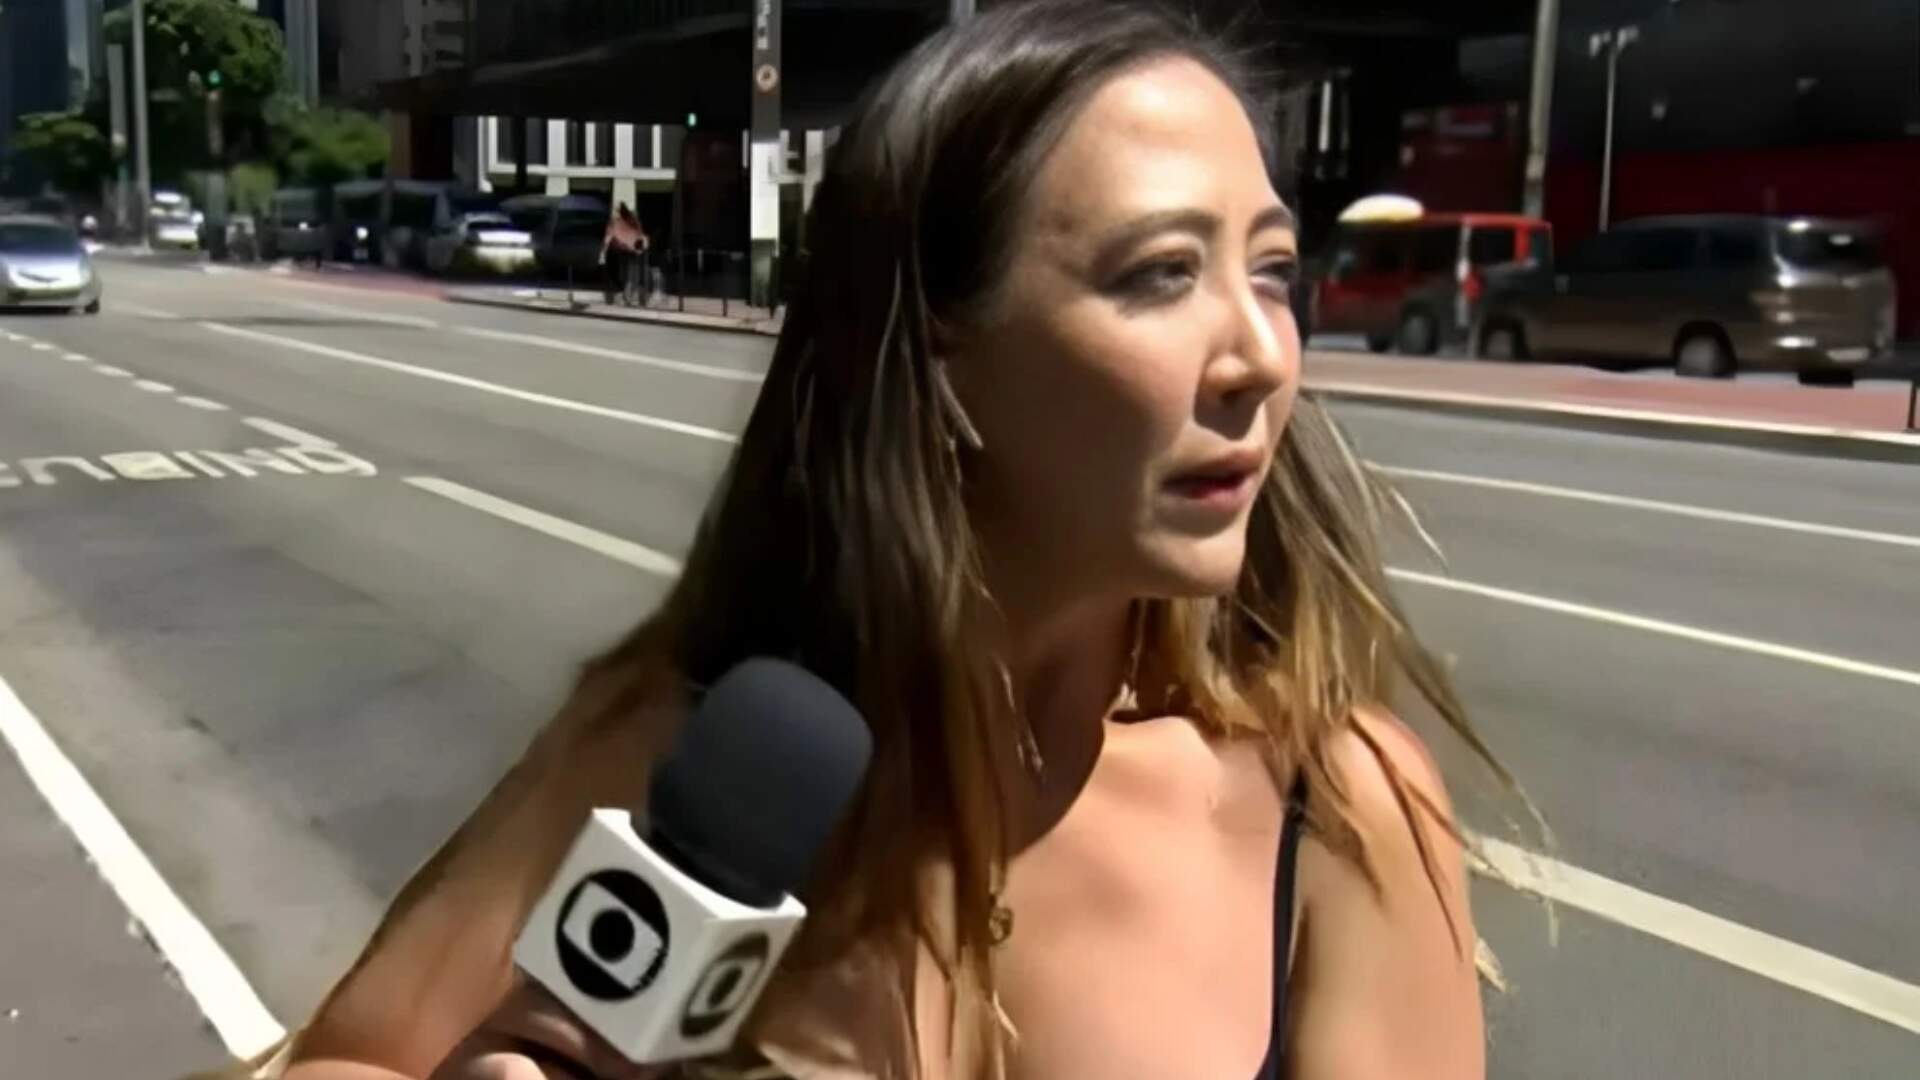 Ao vivo com Patrícia Poeta, repórter do ‘Encontro’ toma susto e quase é assaltada na frente das câmeras - Metropolitana FM